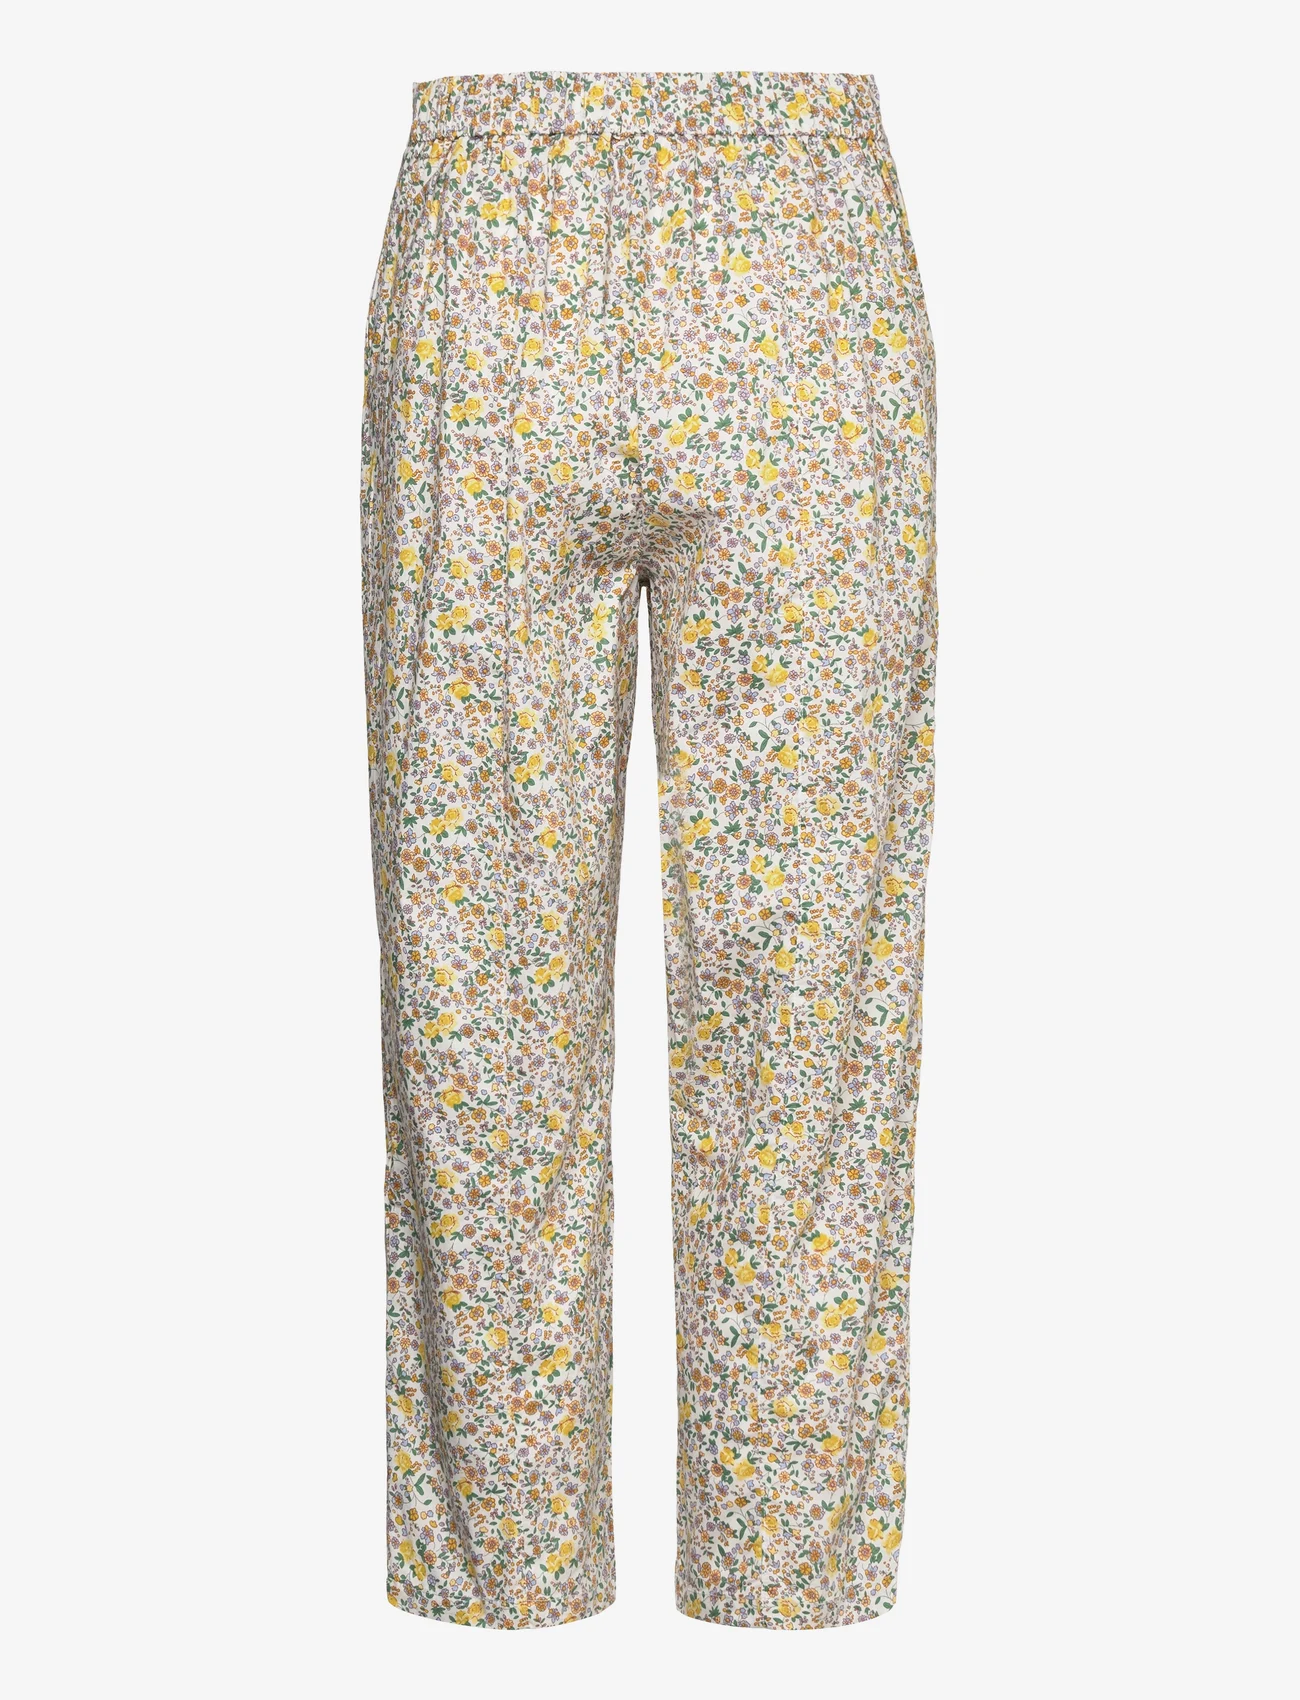 Lollys Laundry - Maisie Pants - bukser med lige ben - 39 yellow - 1